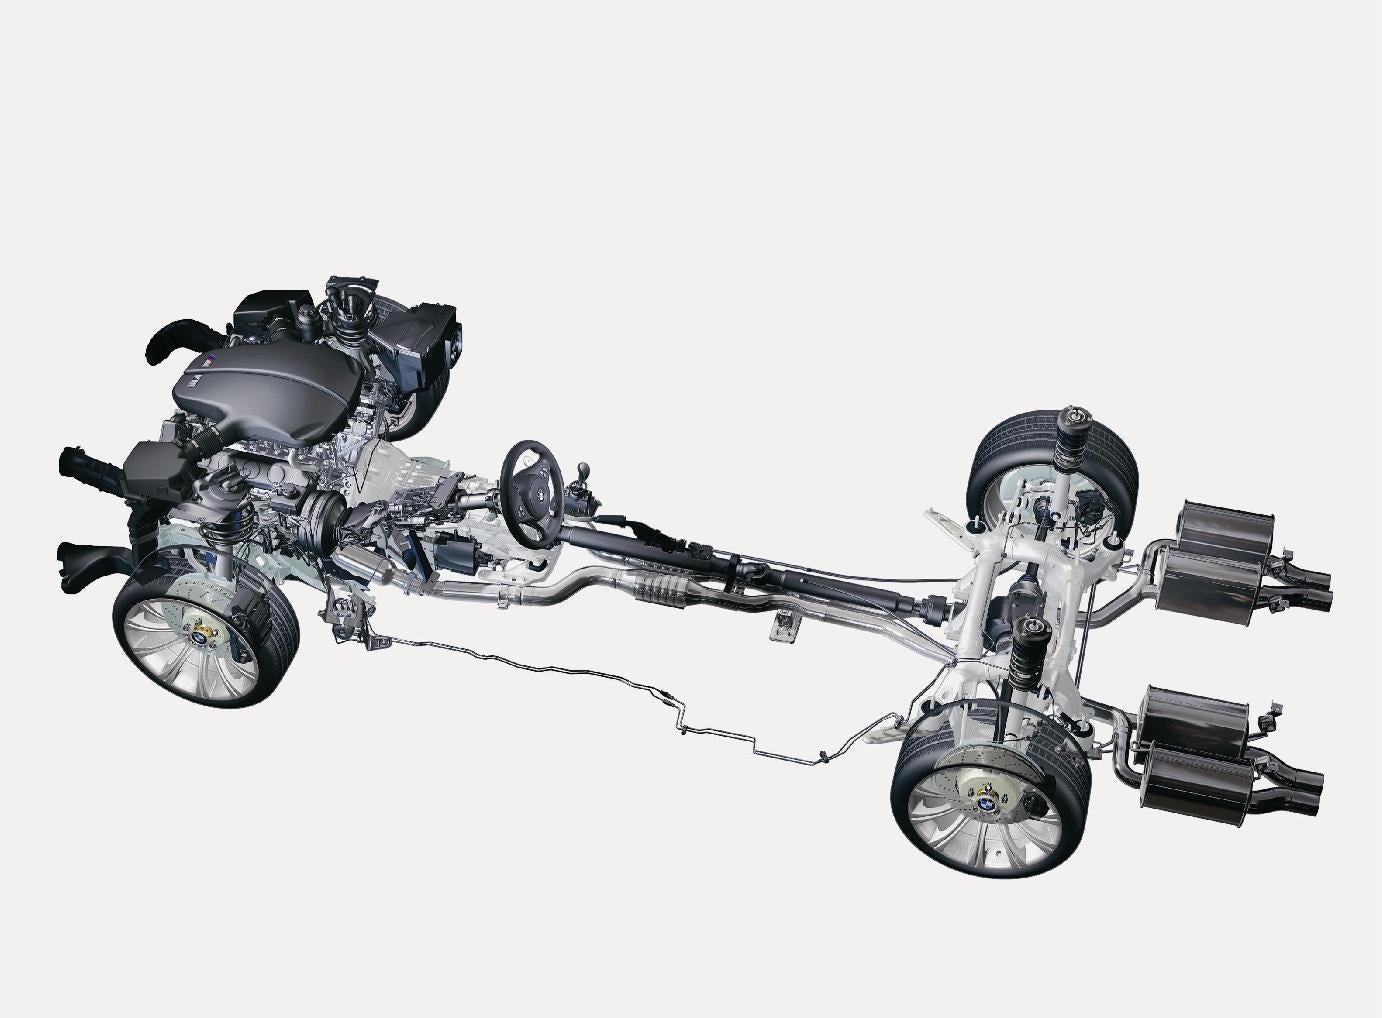 F10 полный привод. БМВ е60 полный привод. Трансмиссия БМВ е60 полный привод. E53 BMW трансмиссия. БМВ е60 передняя подвеска полный привод.